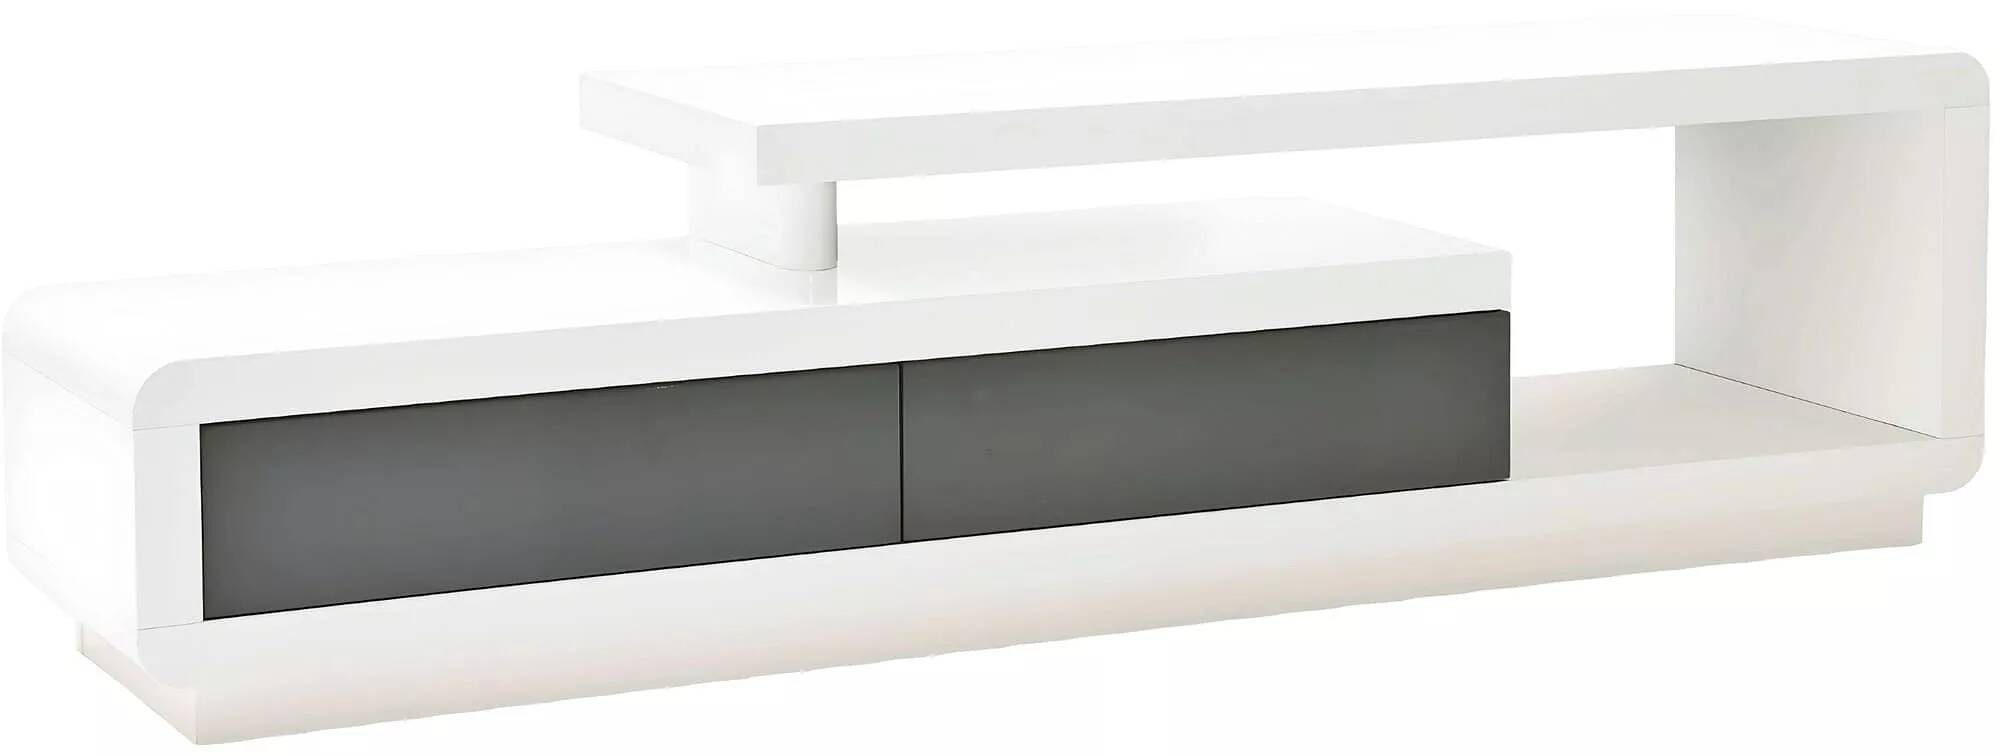 Meuble TV design blanc et gris laqué 2 tiroirs